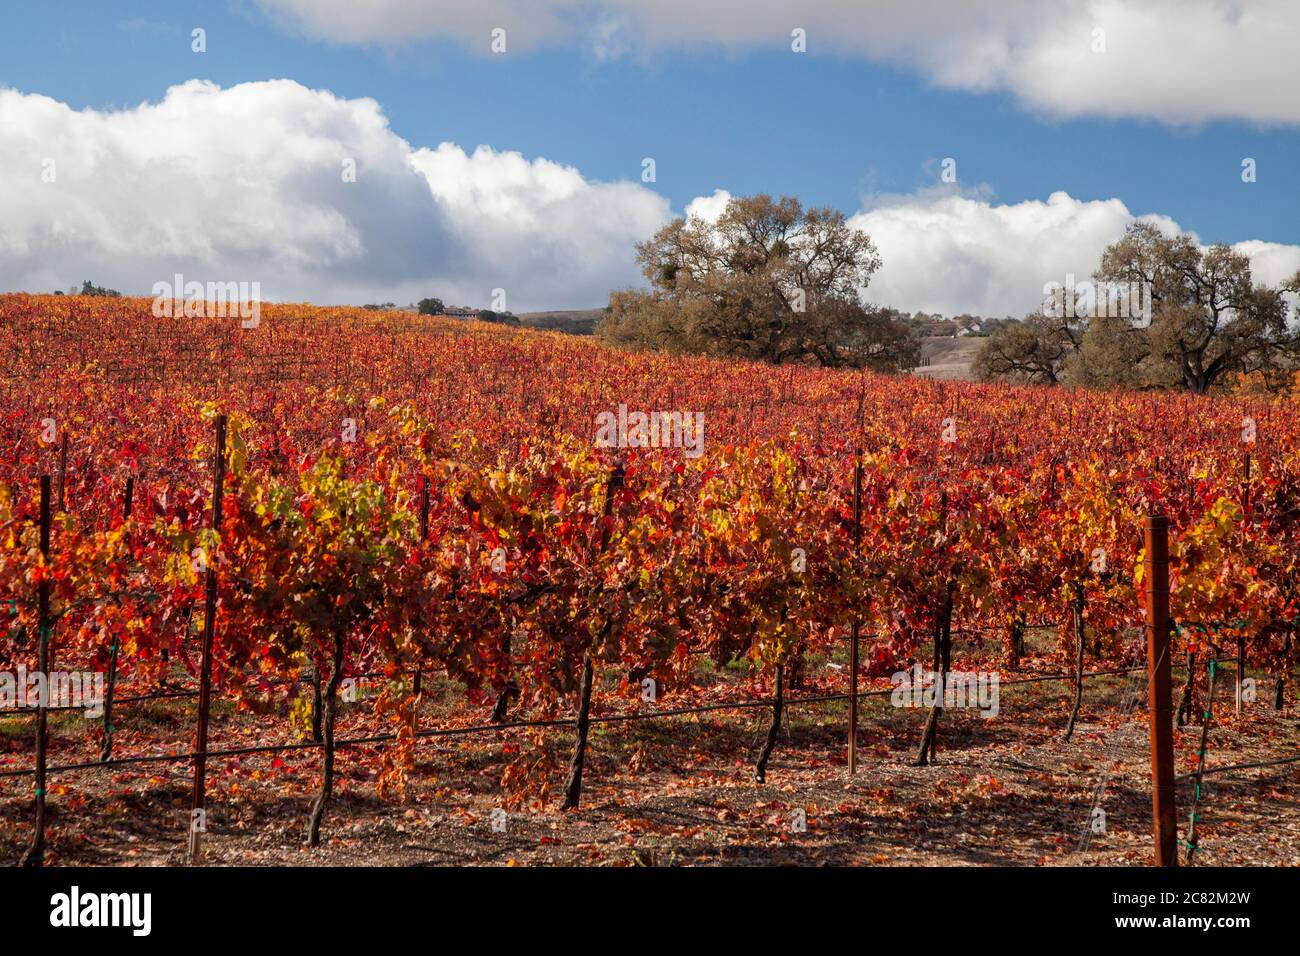 Splendidi colori autunnali nei vigneti tra le querce nella regione vinicola di Paso Robles, California Foto Stock